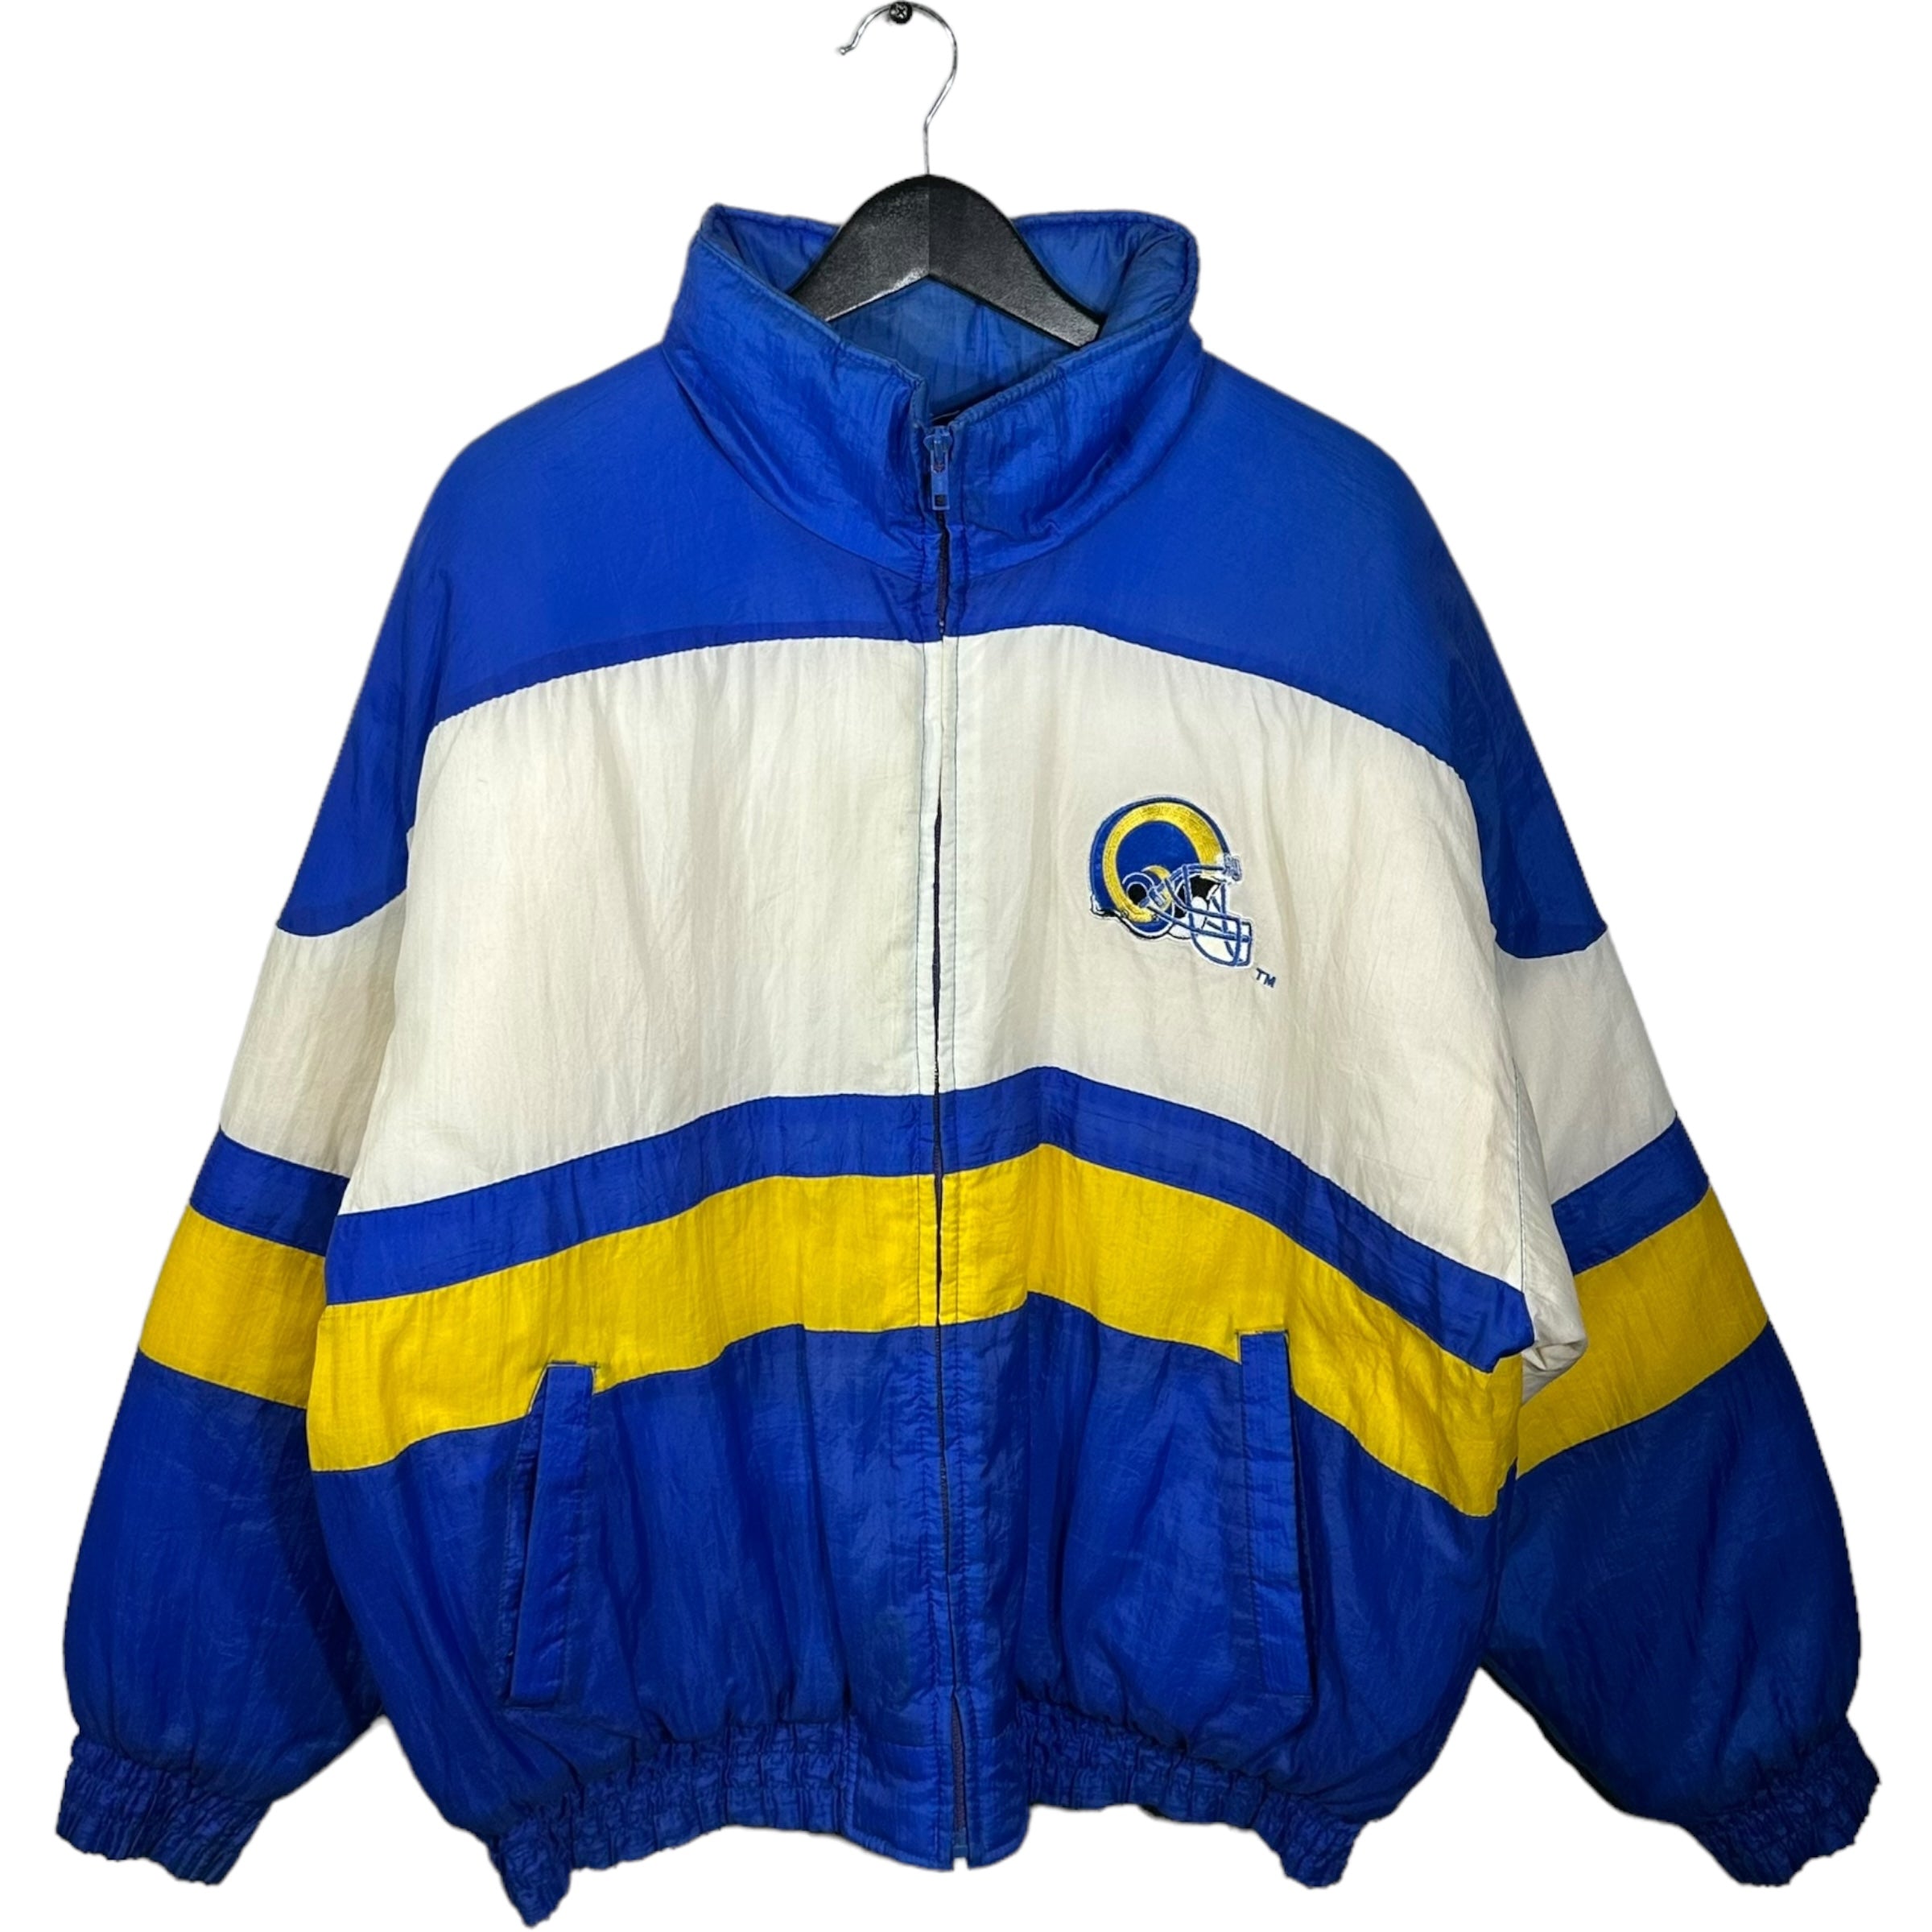 Vintage St. Lous Rams Full Zip Puffer Jacket